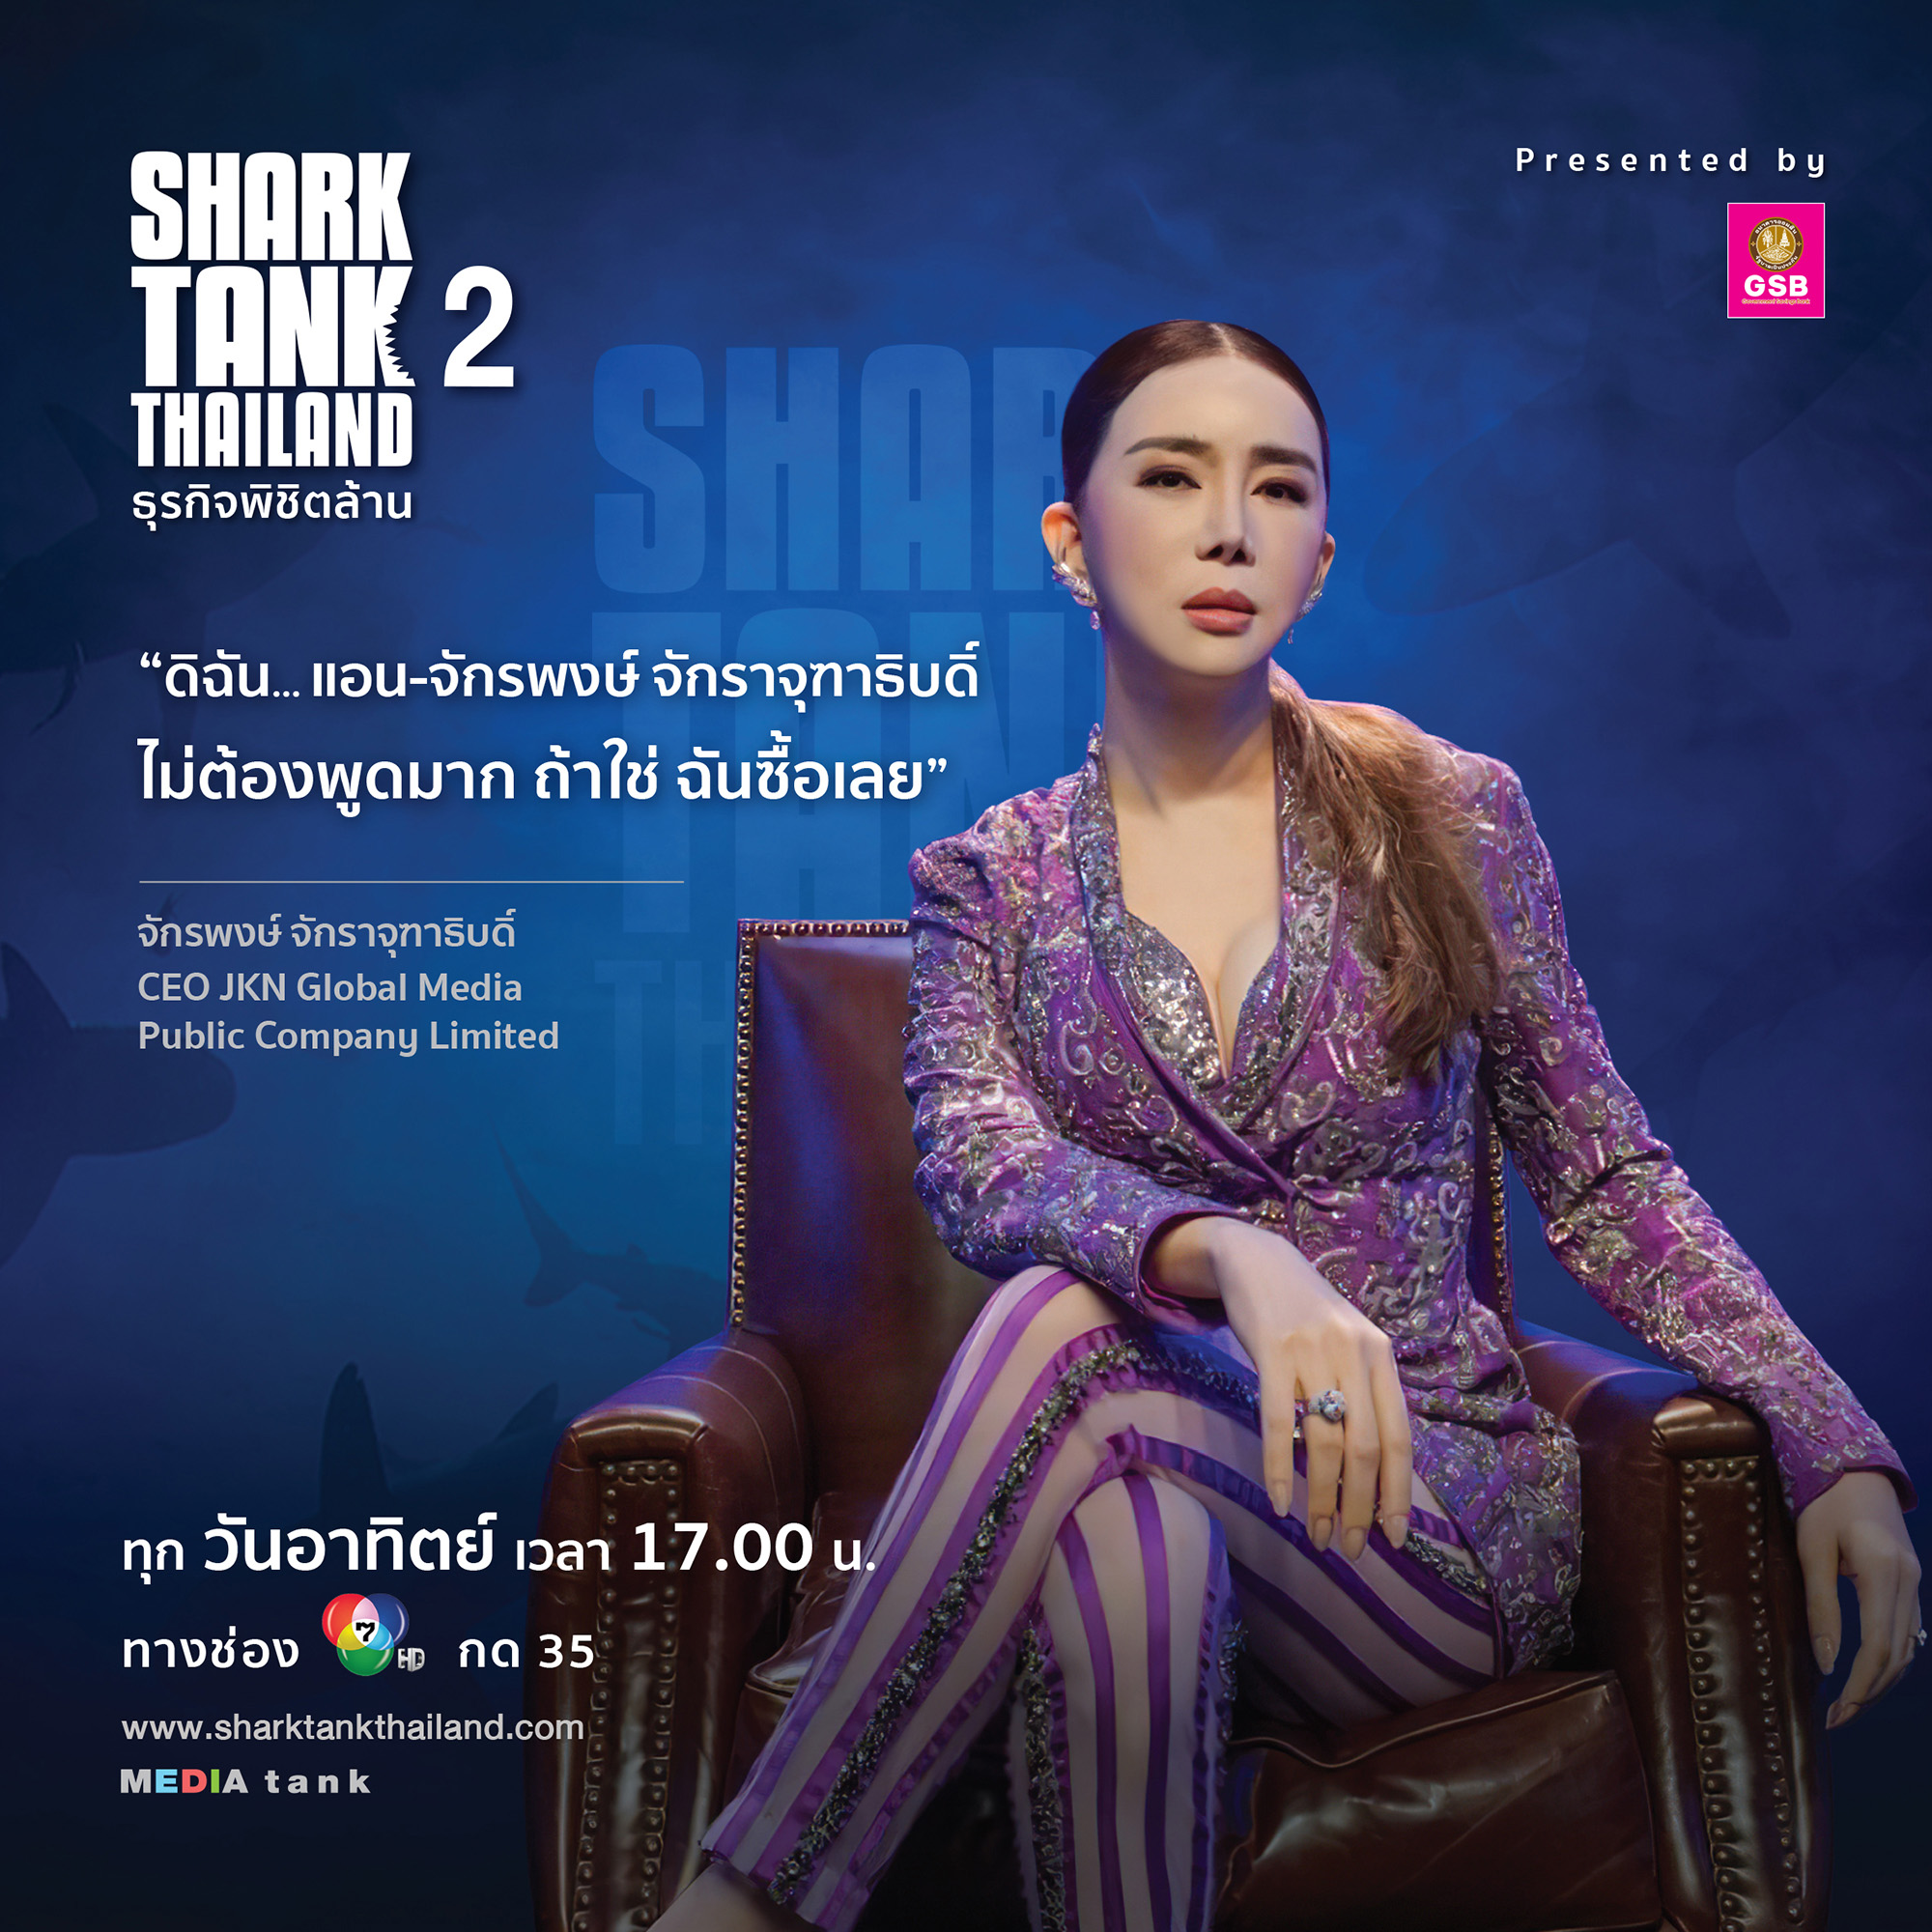 แอน จักรพงษ์ หรือ #SharkAnne ควักเงิน 5.5 ล้านร่วมทุน 2 ธุรกิจเด็ด ใน EP. 4 รายการ Shark Tank Thailand ซีซั่น